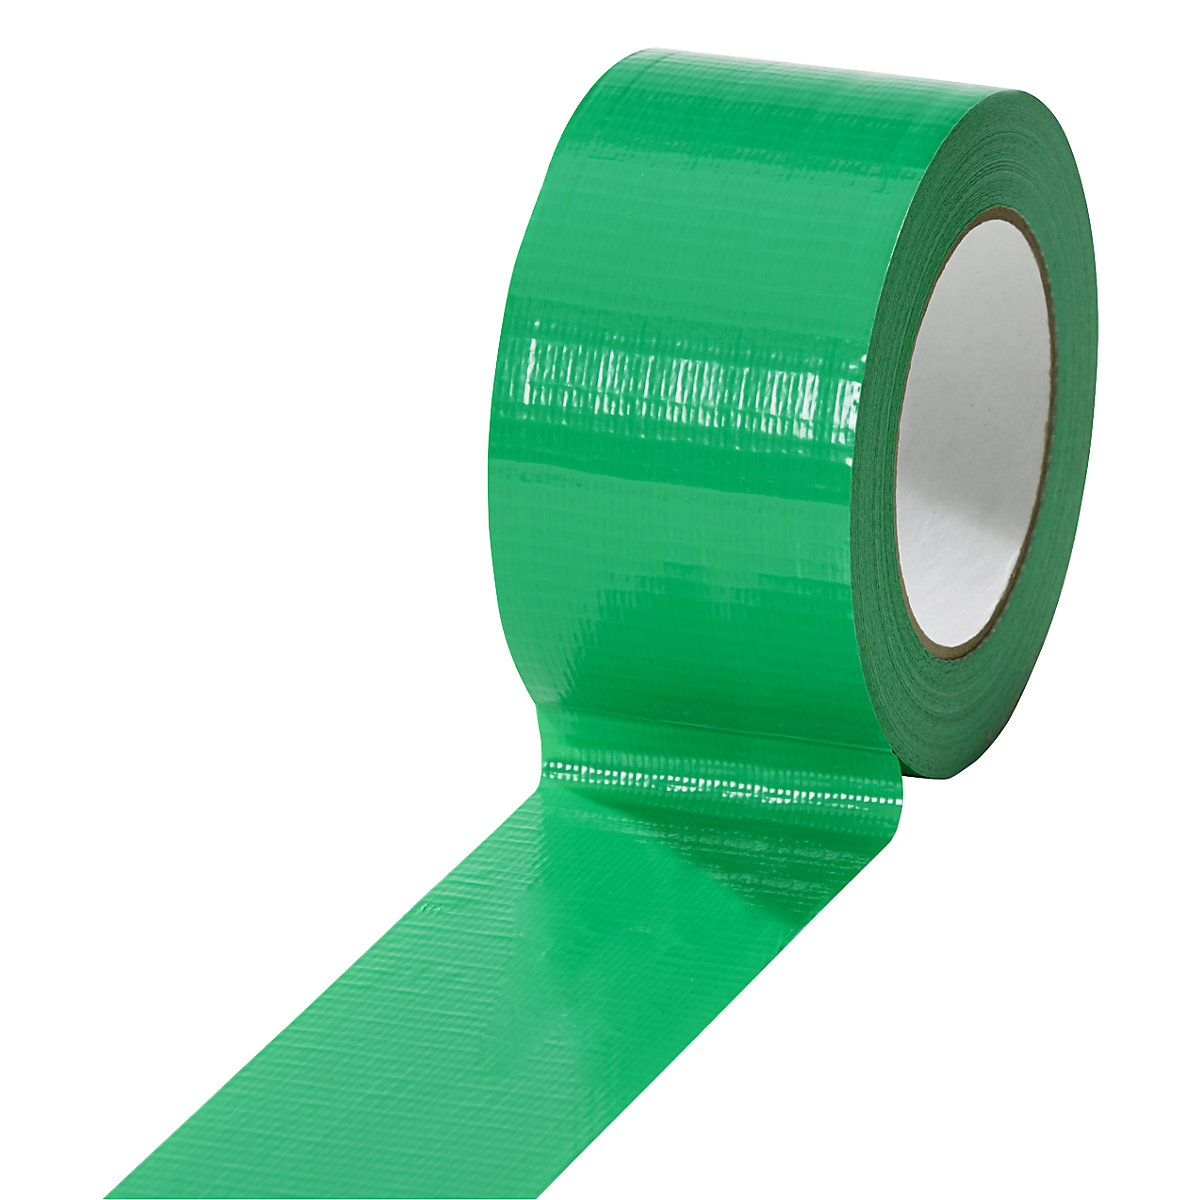 Taśma tkaninowa, w różnych kolorach, opak. 18 rolek, zielona, szer. taśmy 50 mm-7